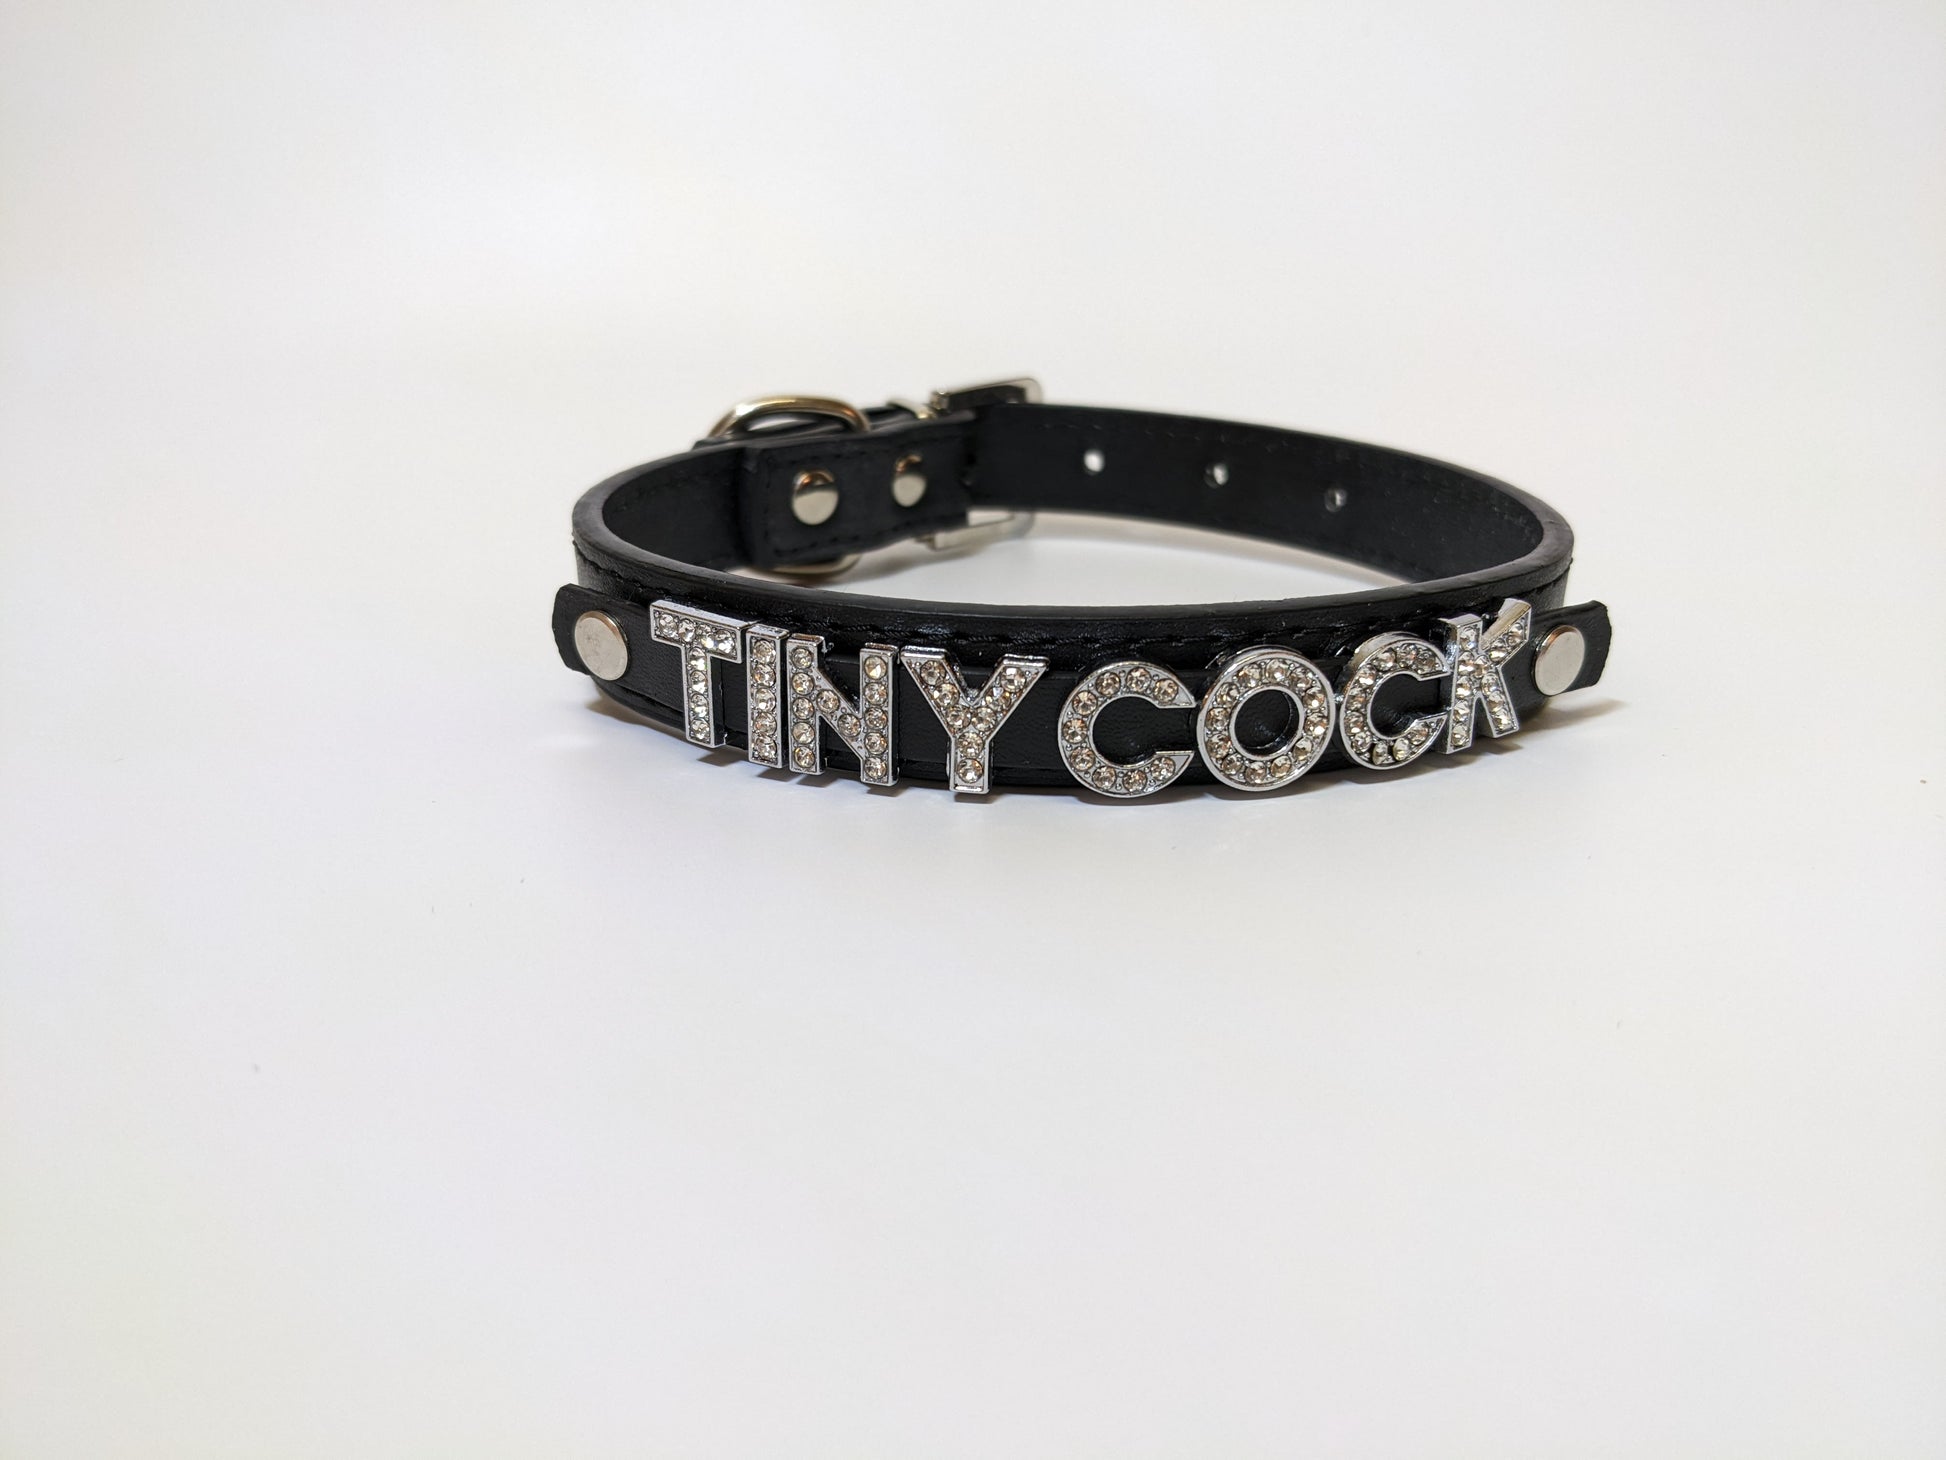 Tiny Cock sph Kink Collar